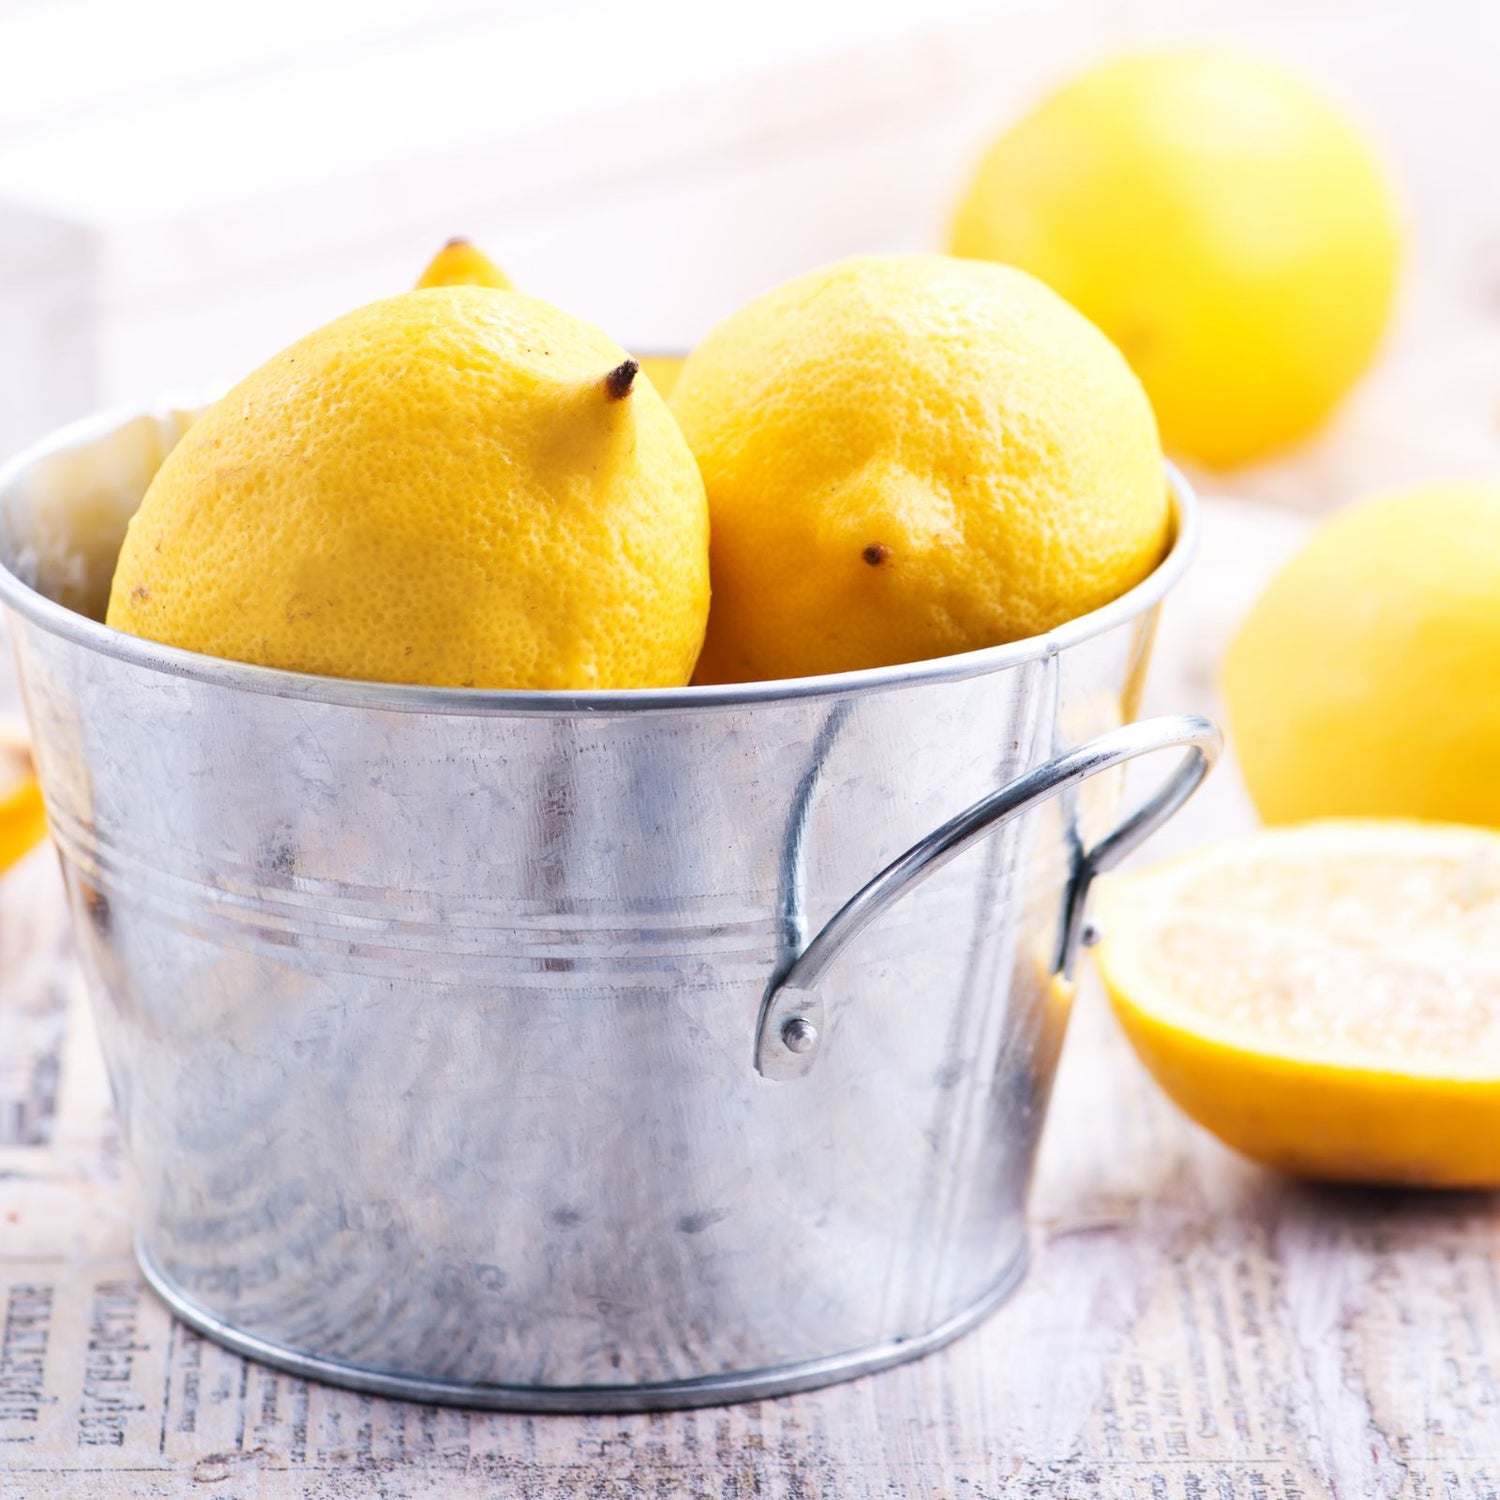 Organic lemons in a metal bucket